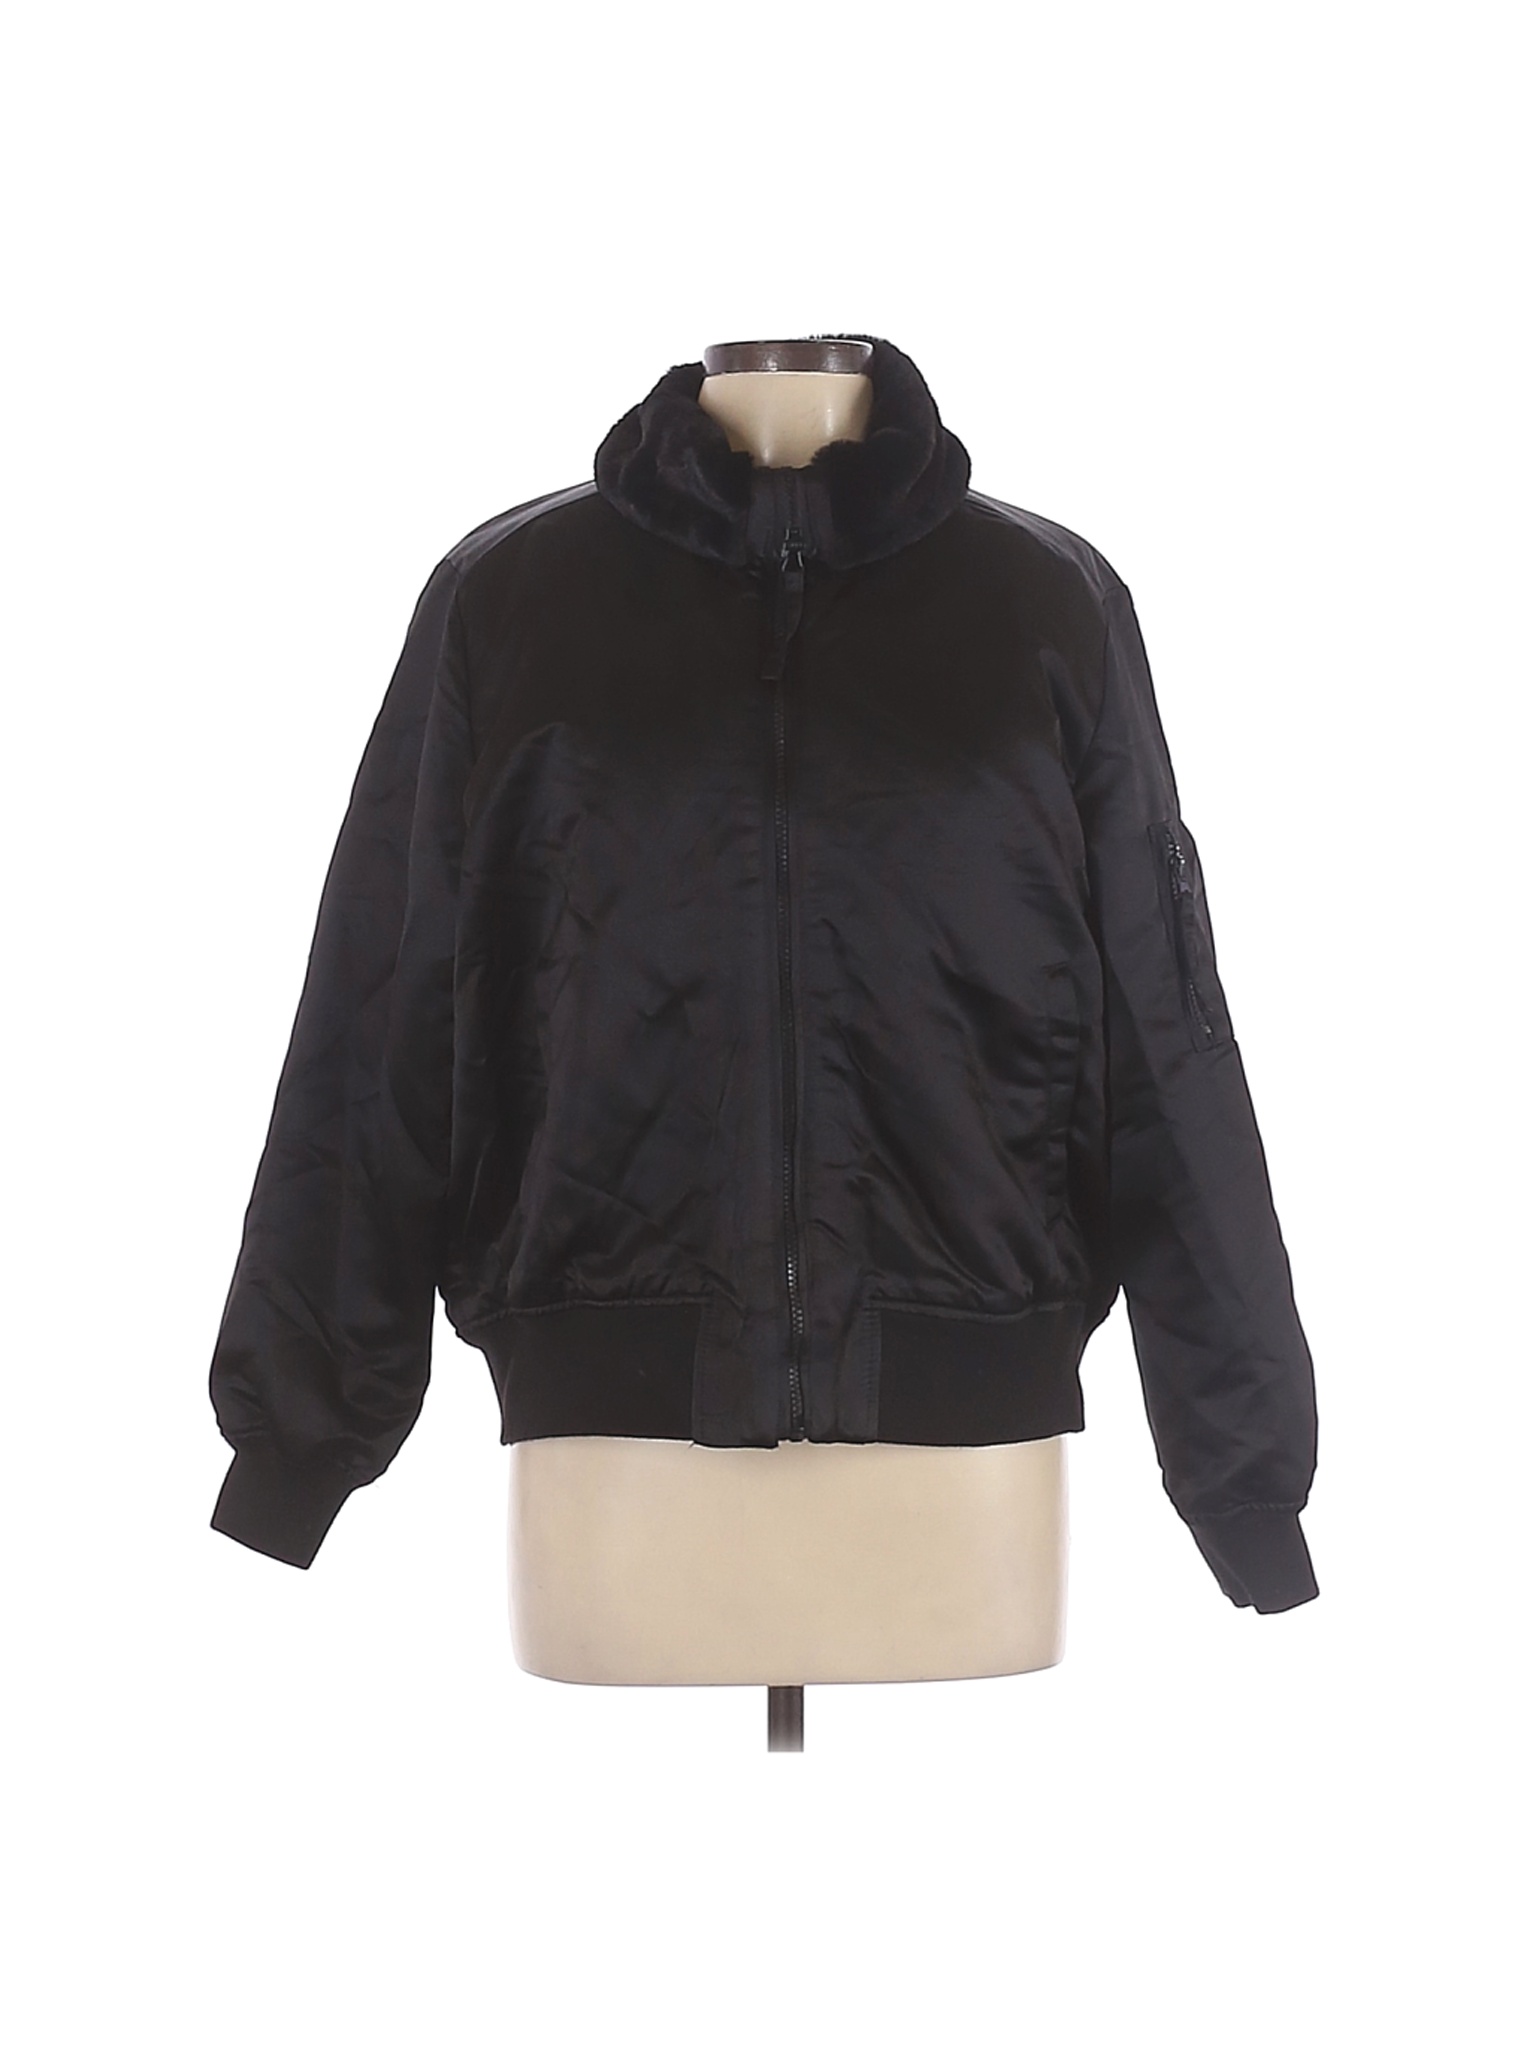 Gap Women Black Coat L | eBay